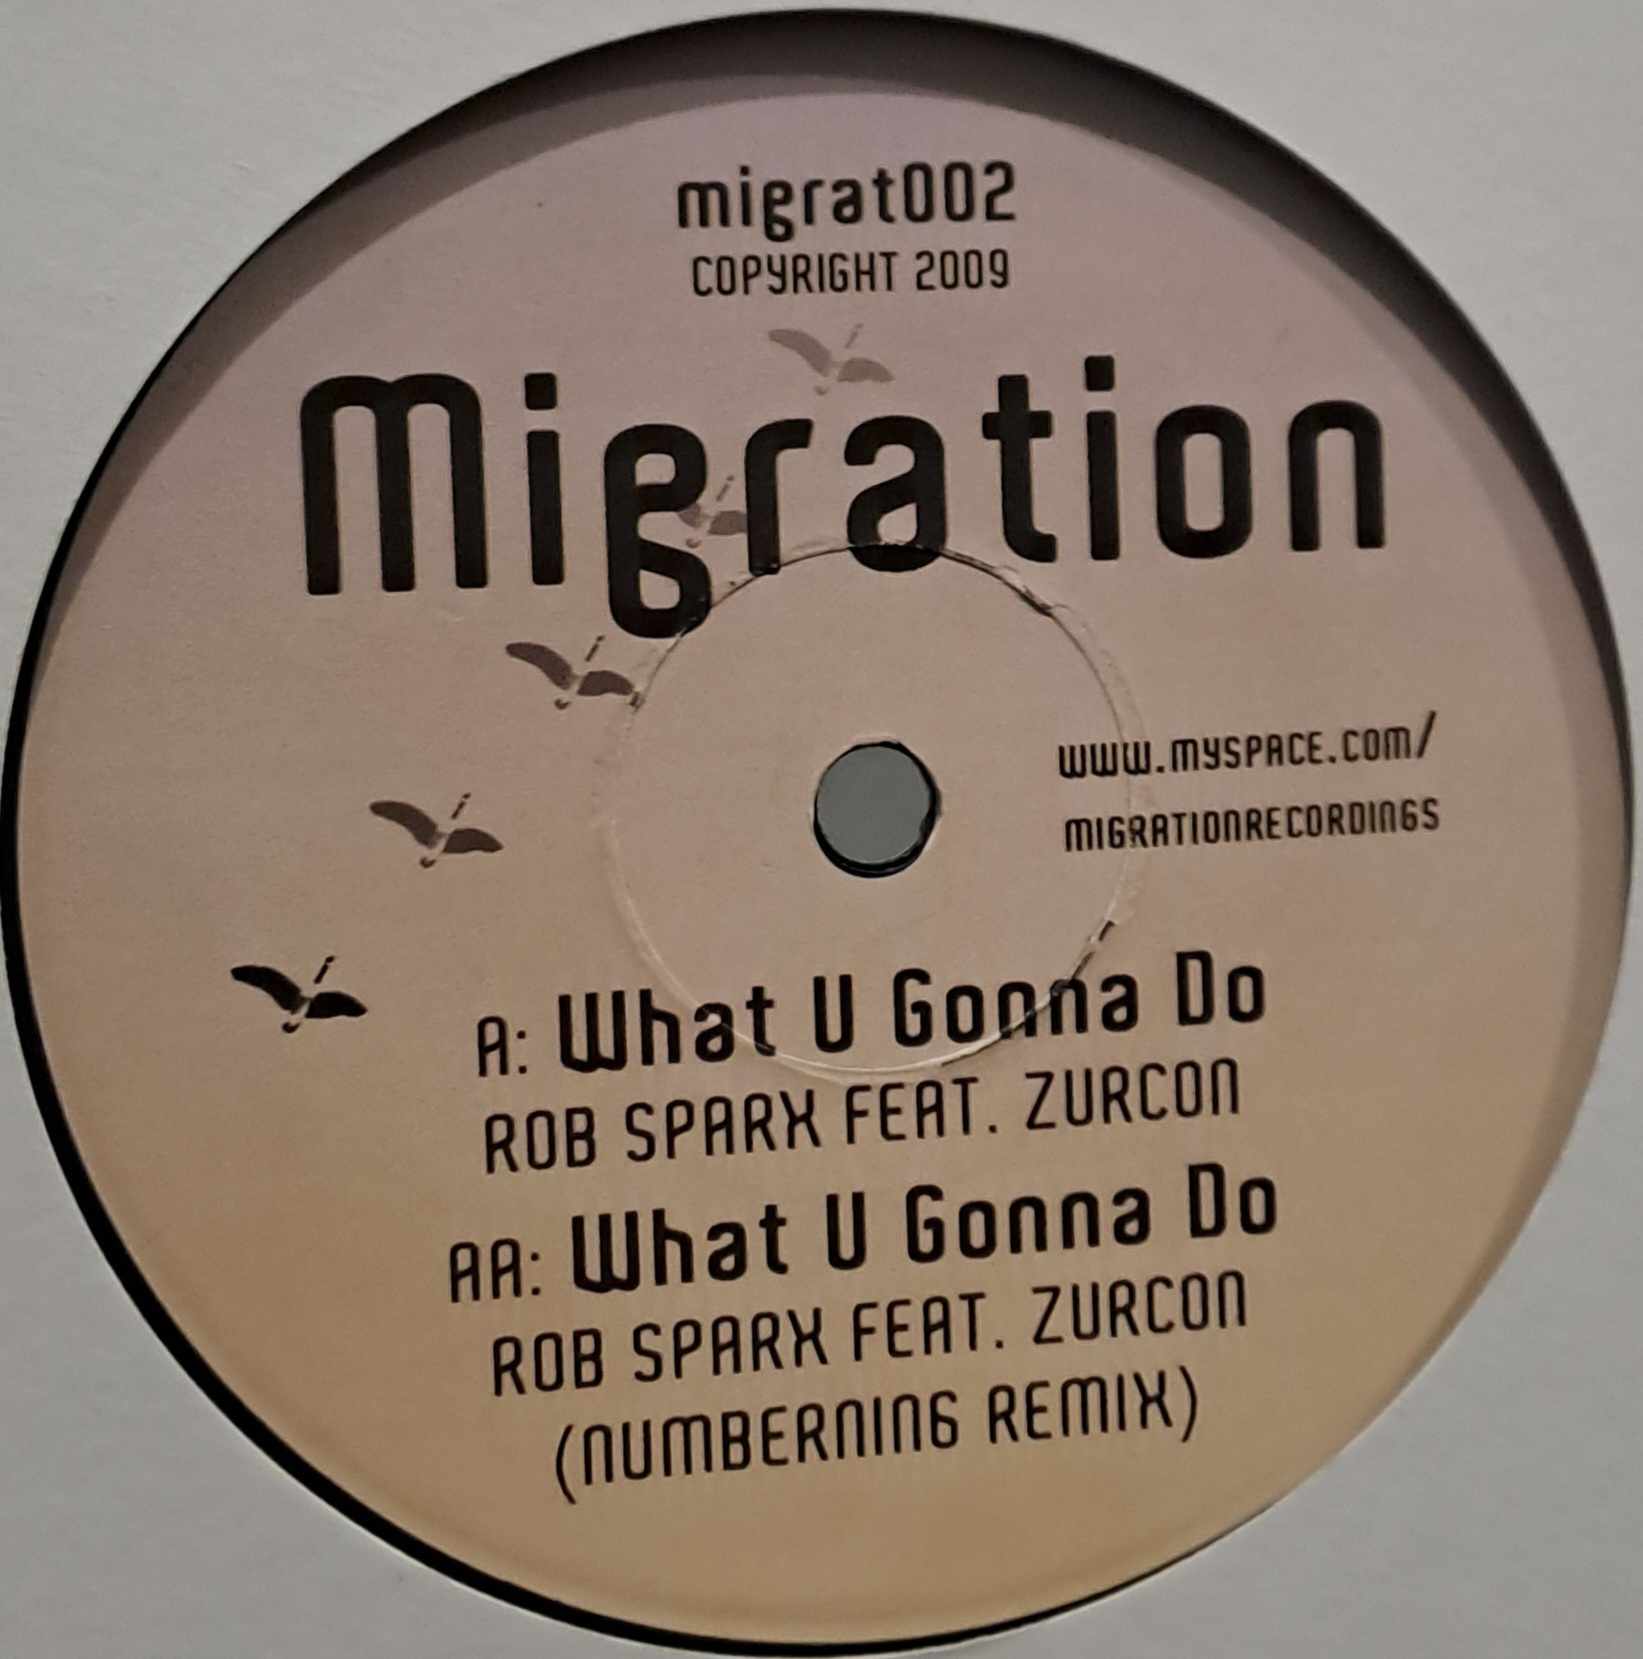 Migration 02 - vinyle dubstep